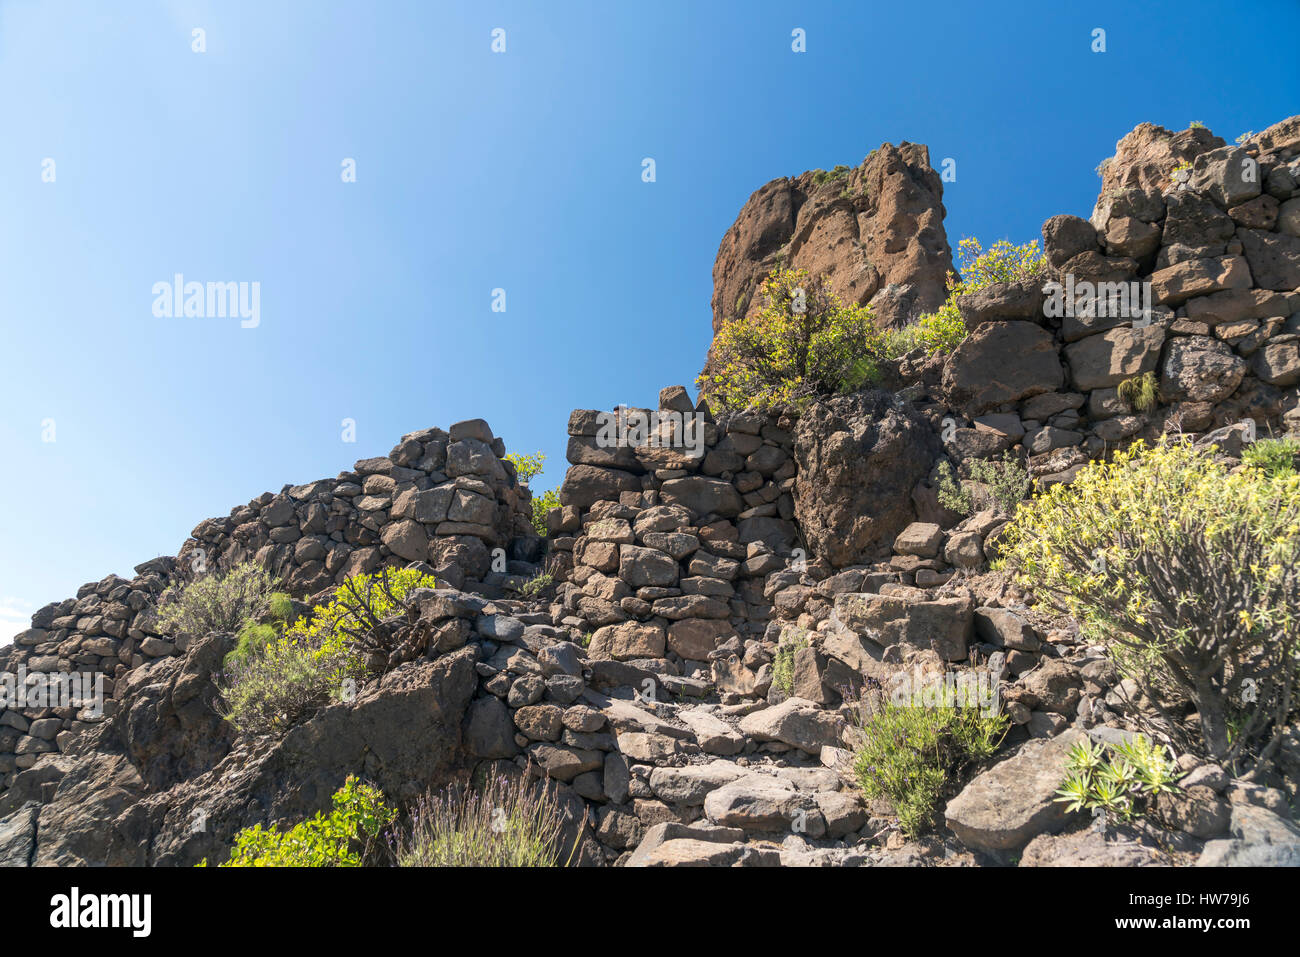 Steinmauern der Ureinwohner am Monolith Roque Bentayga, Insel Gran Canaria, Kanarische Inseln, Spanien | pre hispanic stone walls at the Monolith Roqu Stock Photo